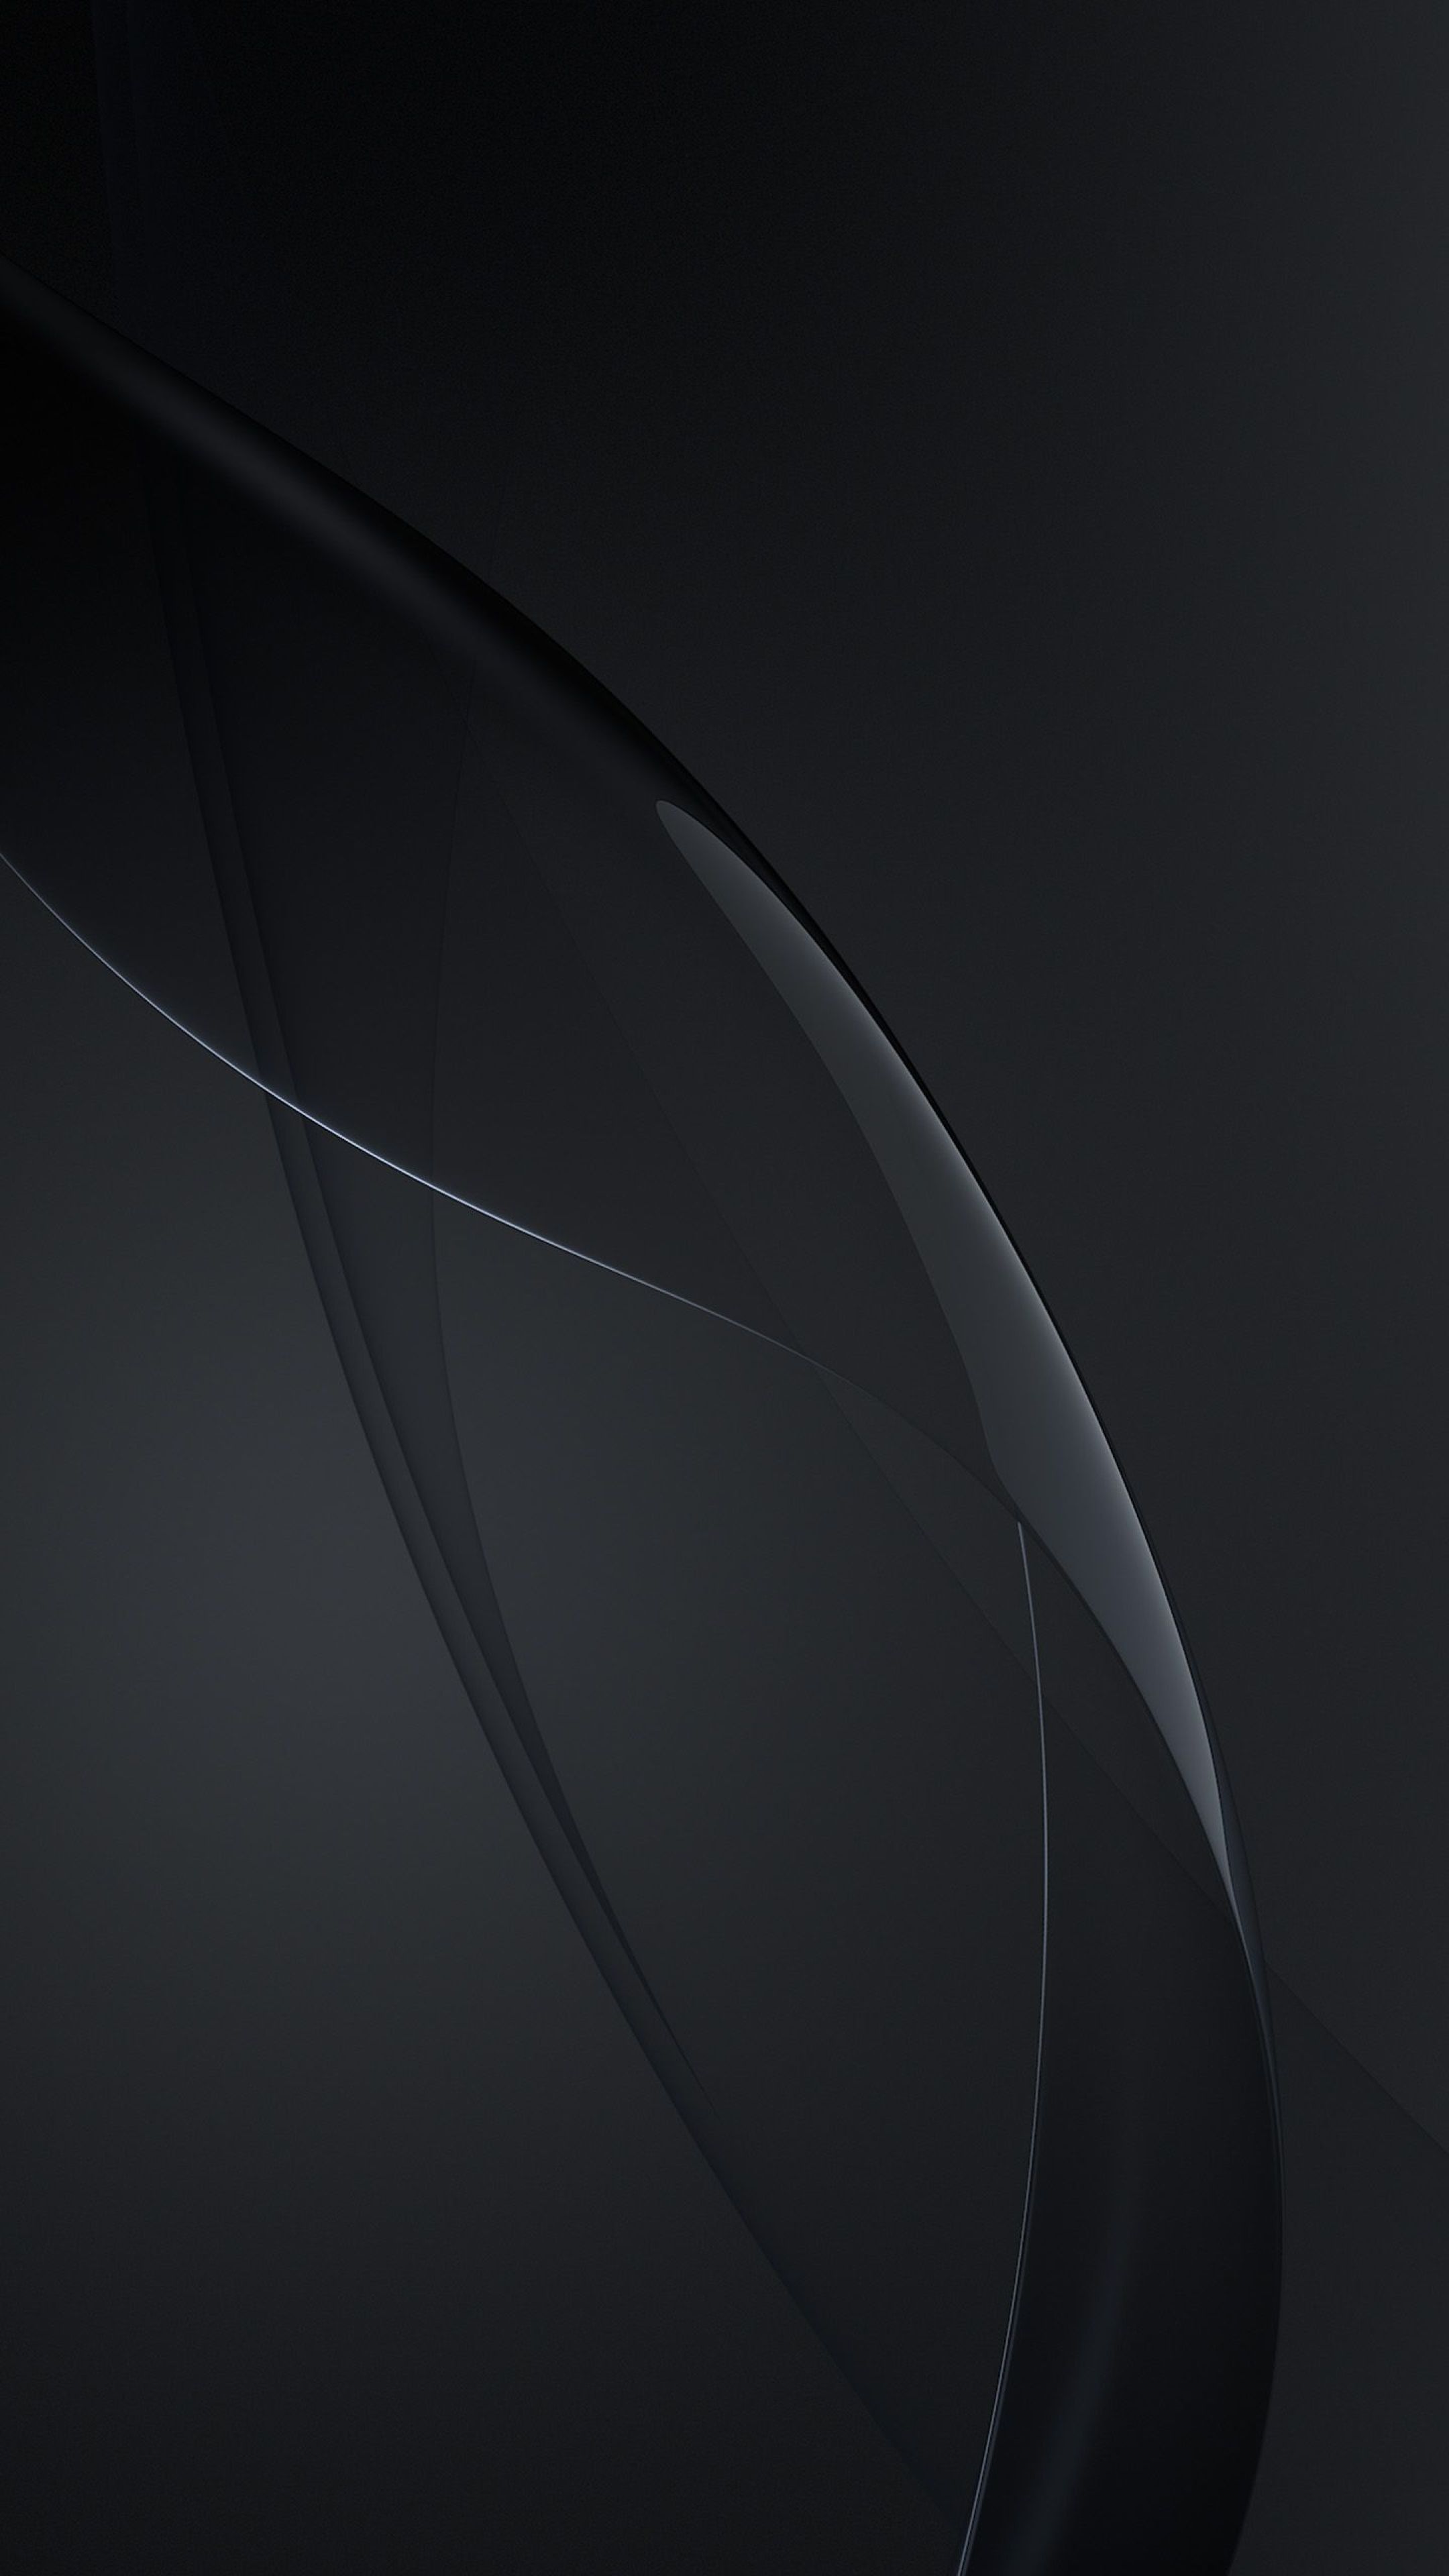 Lựa chọn những hình nền đen tuyệt đẹp cho điện thoại Samsung của bạn với Samsung Black Wallpapers. Các hình nền này sẽ mang đến cho màn hình của bạn vẻ đẹp đầy chất lượng.